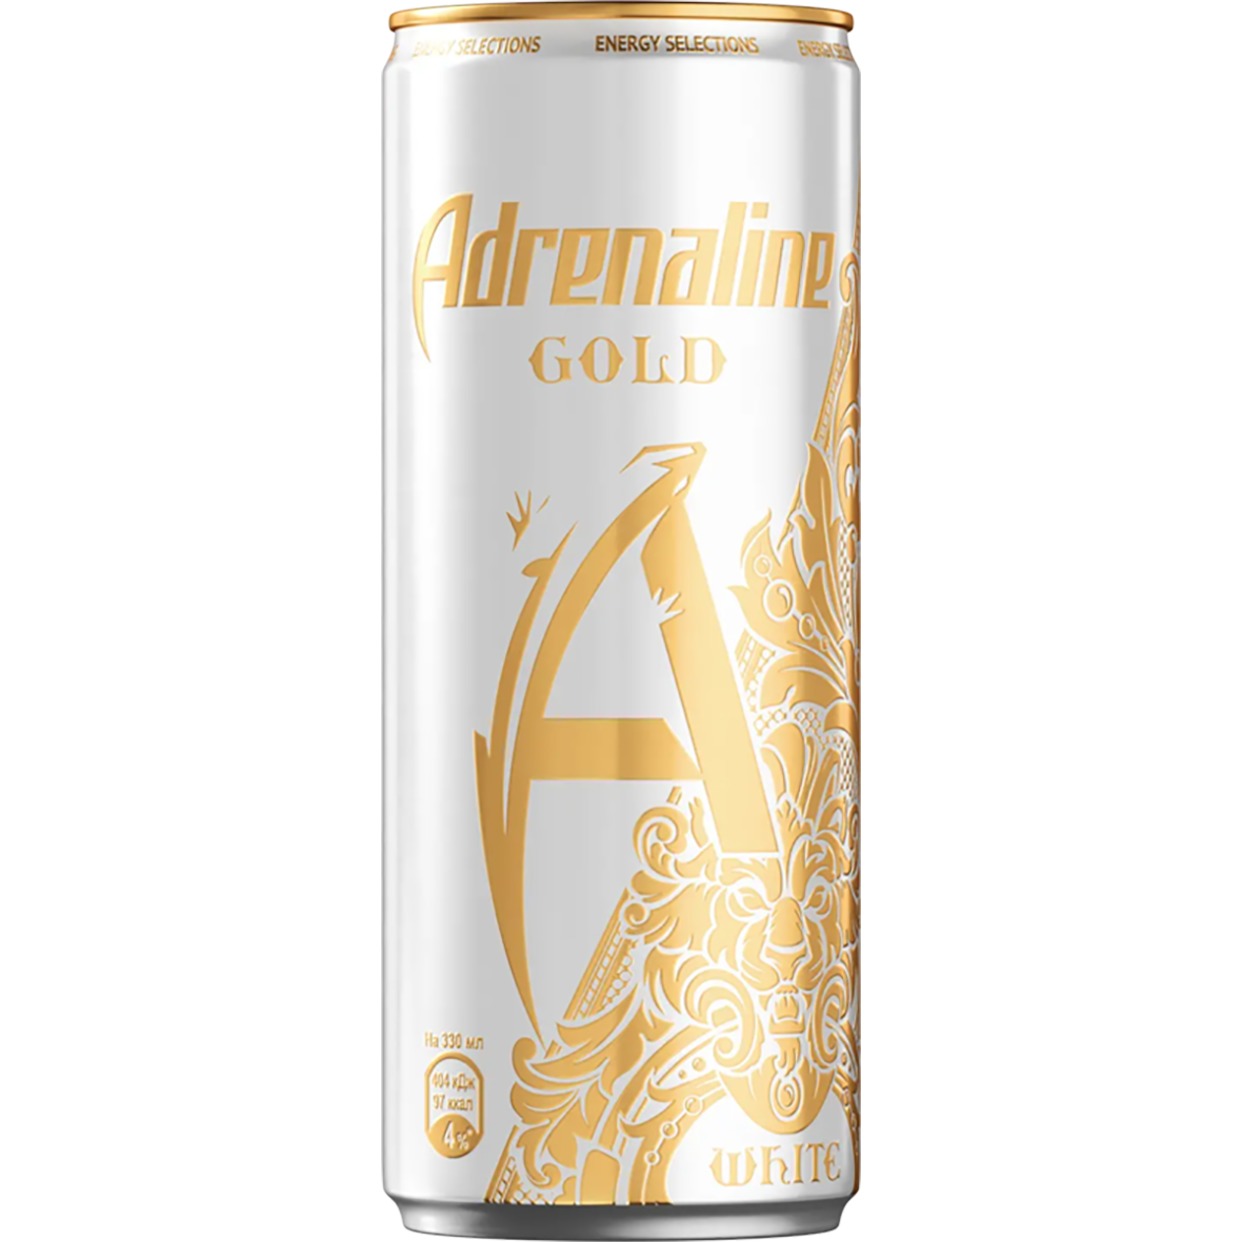 Напиток безалкогольный тонизирующий газированный пастеризованный «Adrenaline Gold. White»(«Адреналин Голд. Вайт») 0,33л Х 12 по акции в Пятерочке